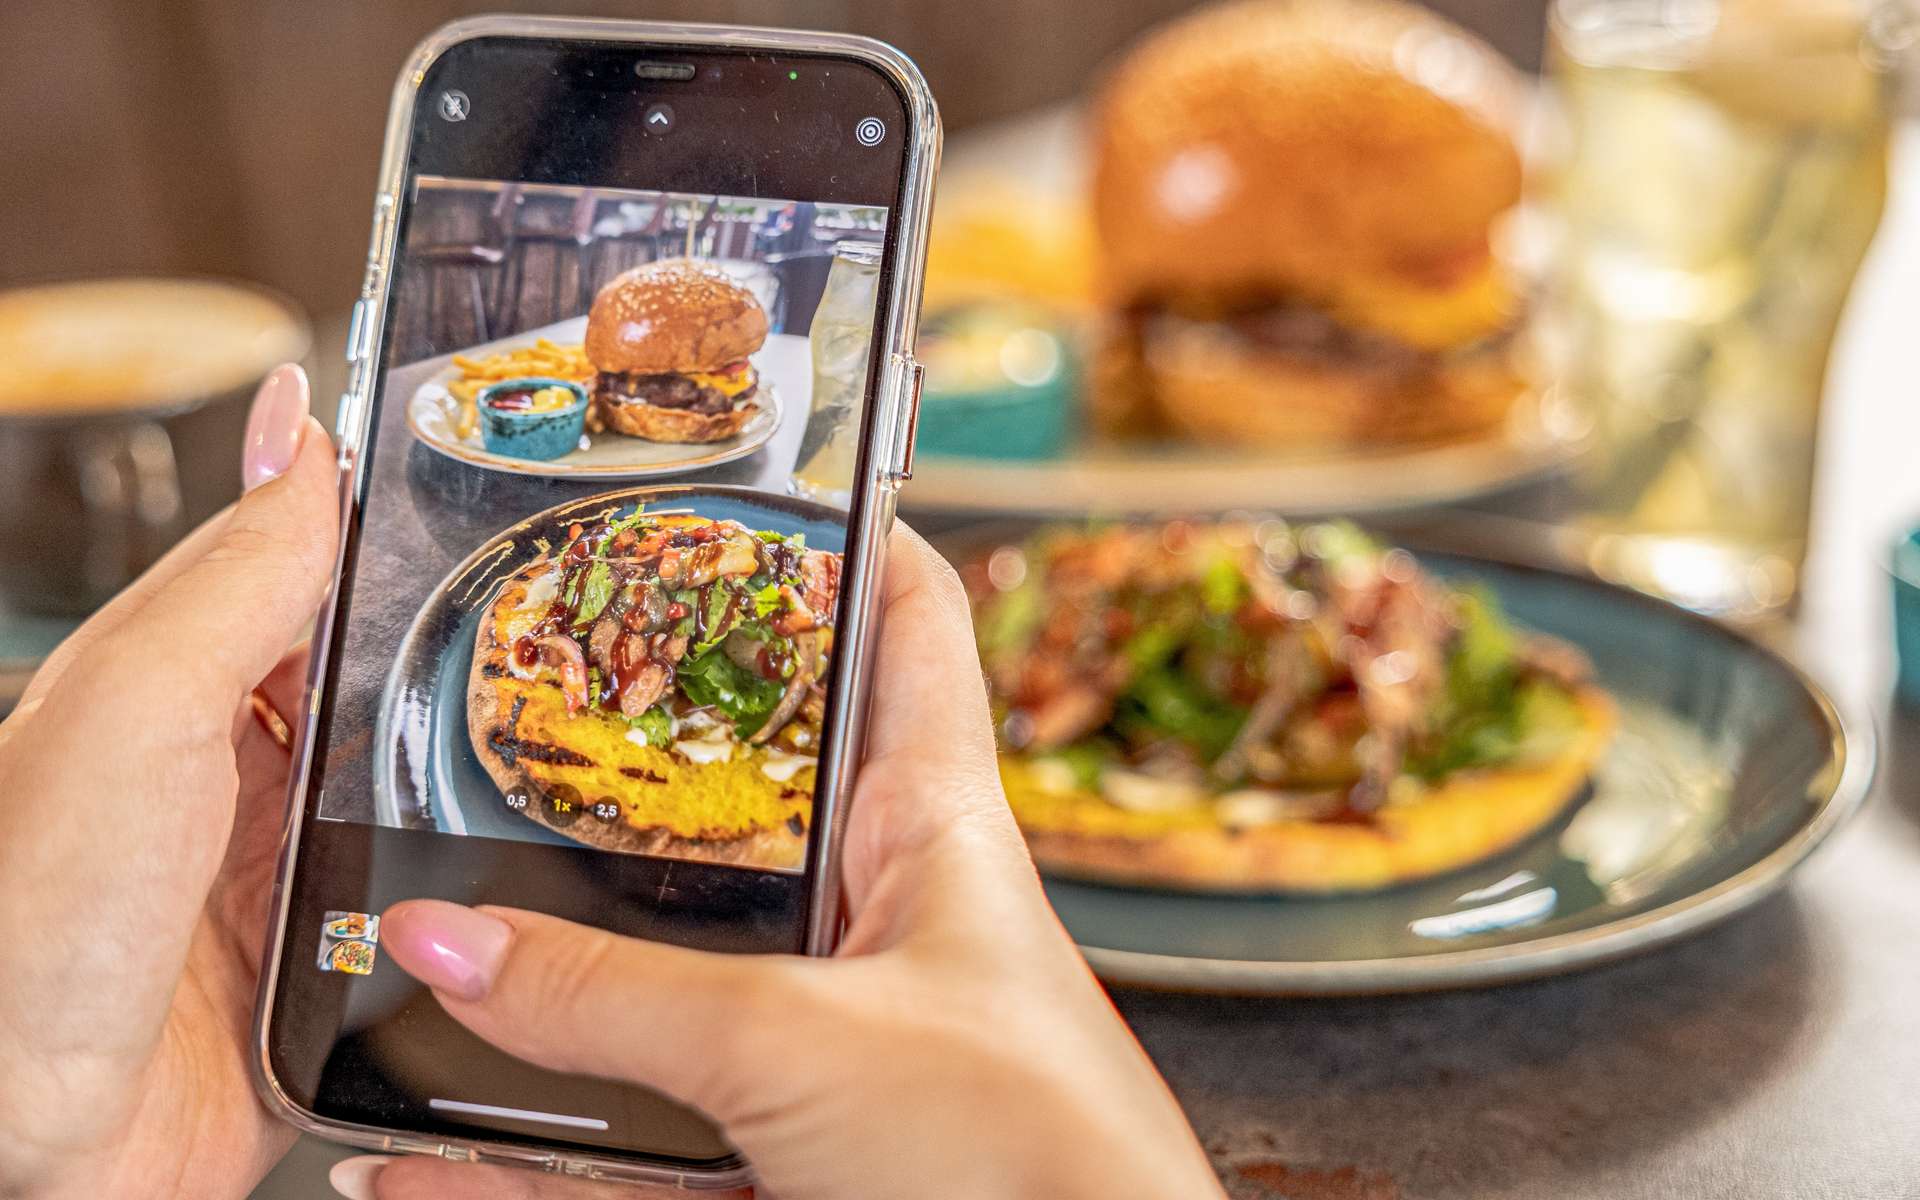 Regarder des images de nourriture sur internet pourrait agir comme un coupe-faim